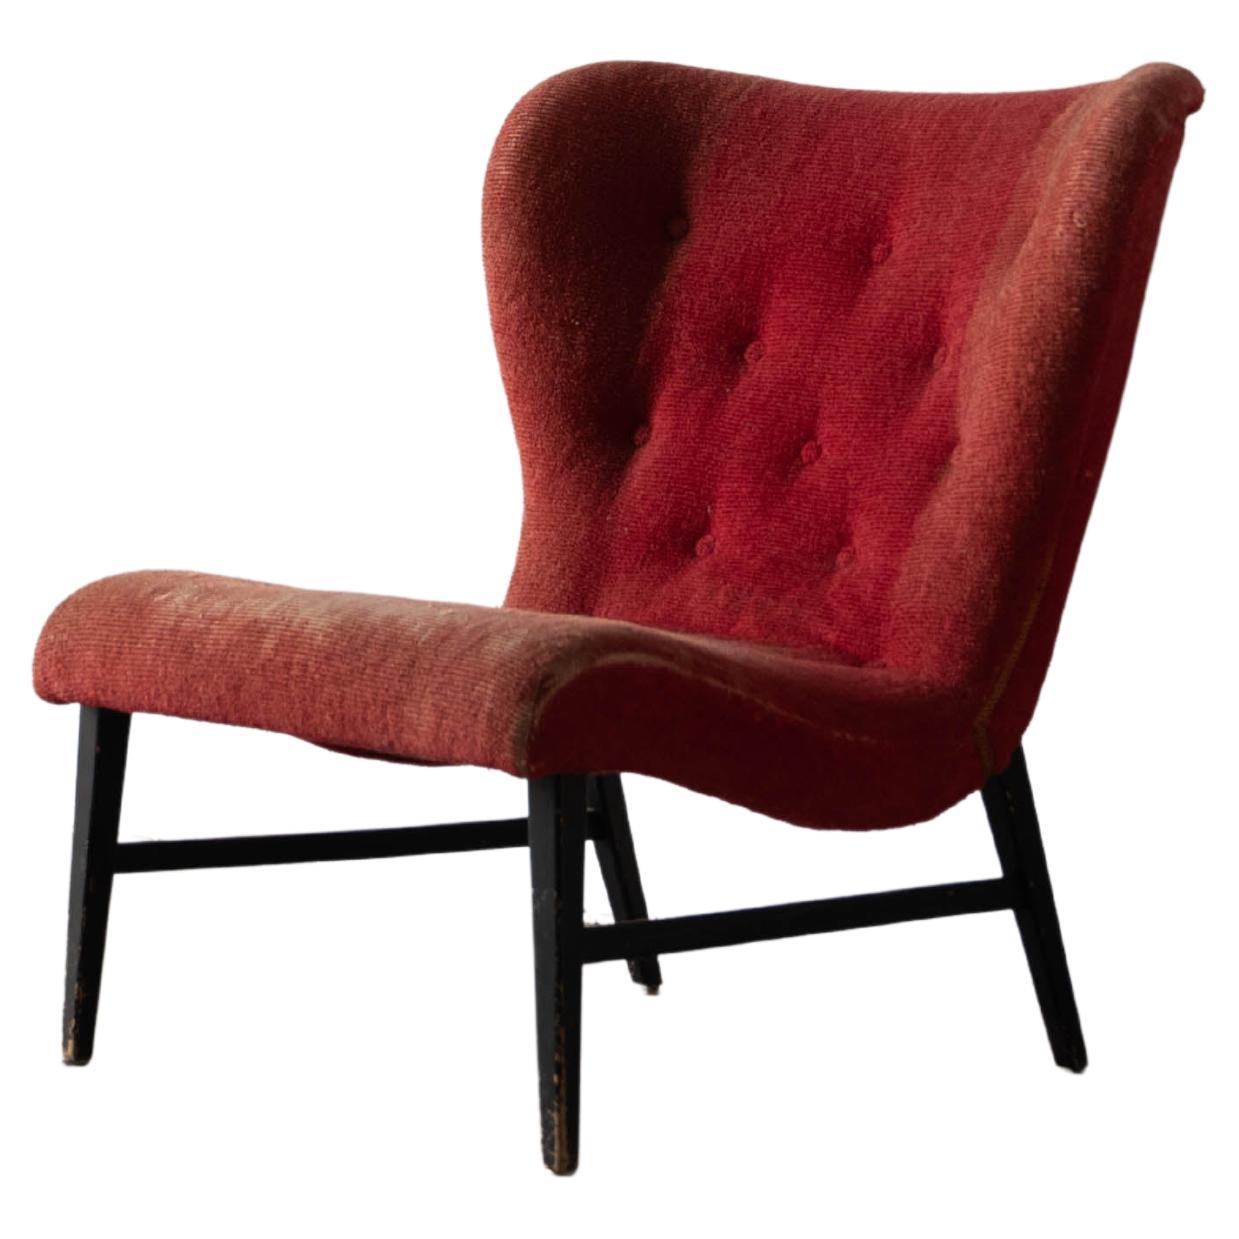 Erik Karlén 'Attributed' Slipper Chair, Red Velvet, Wood, Sweden, 1940s For Sale